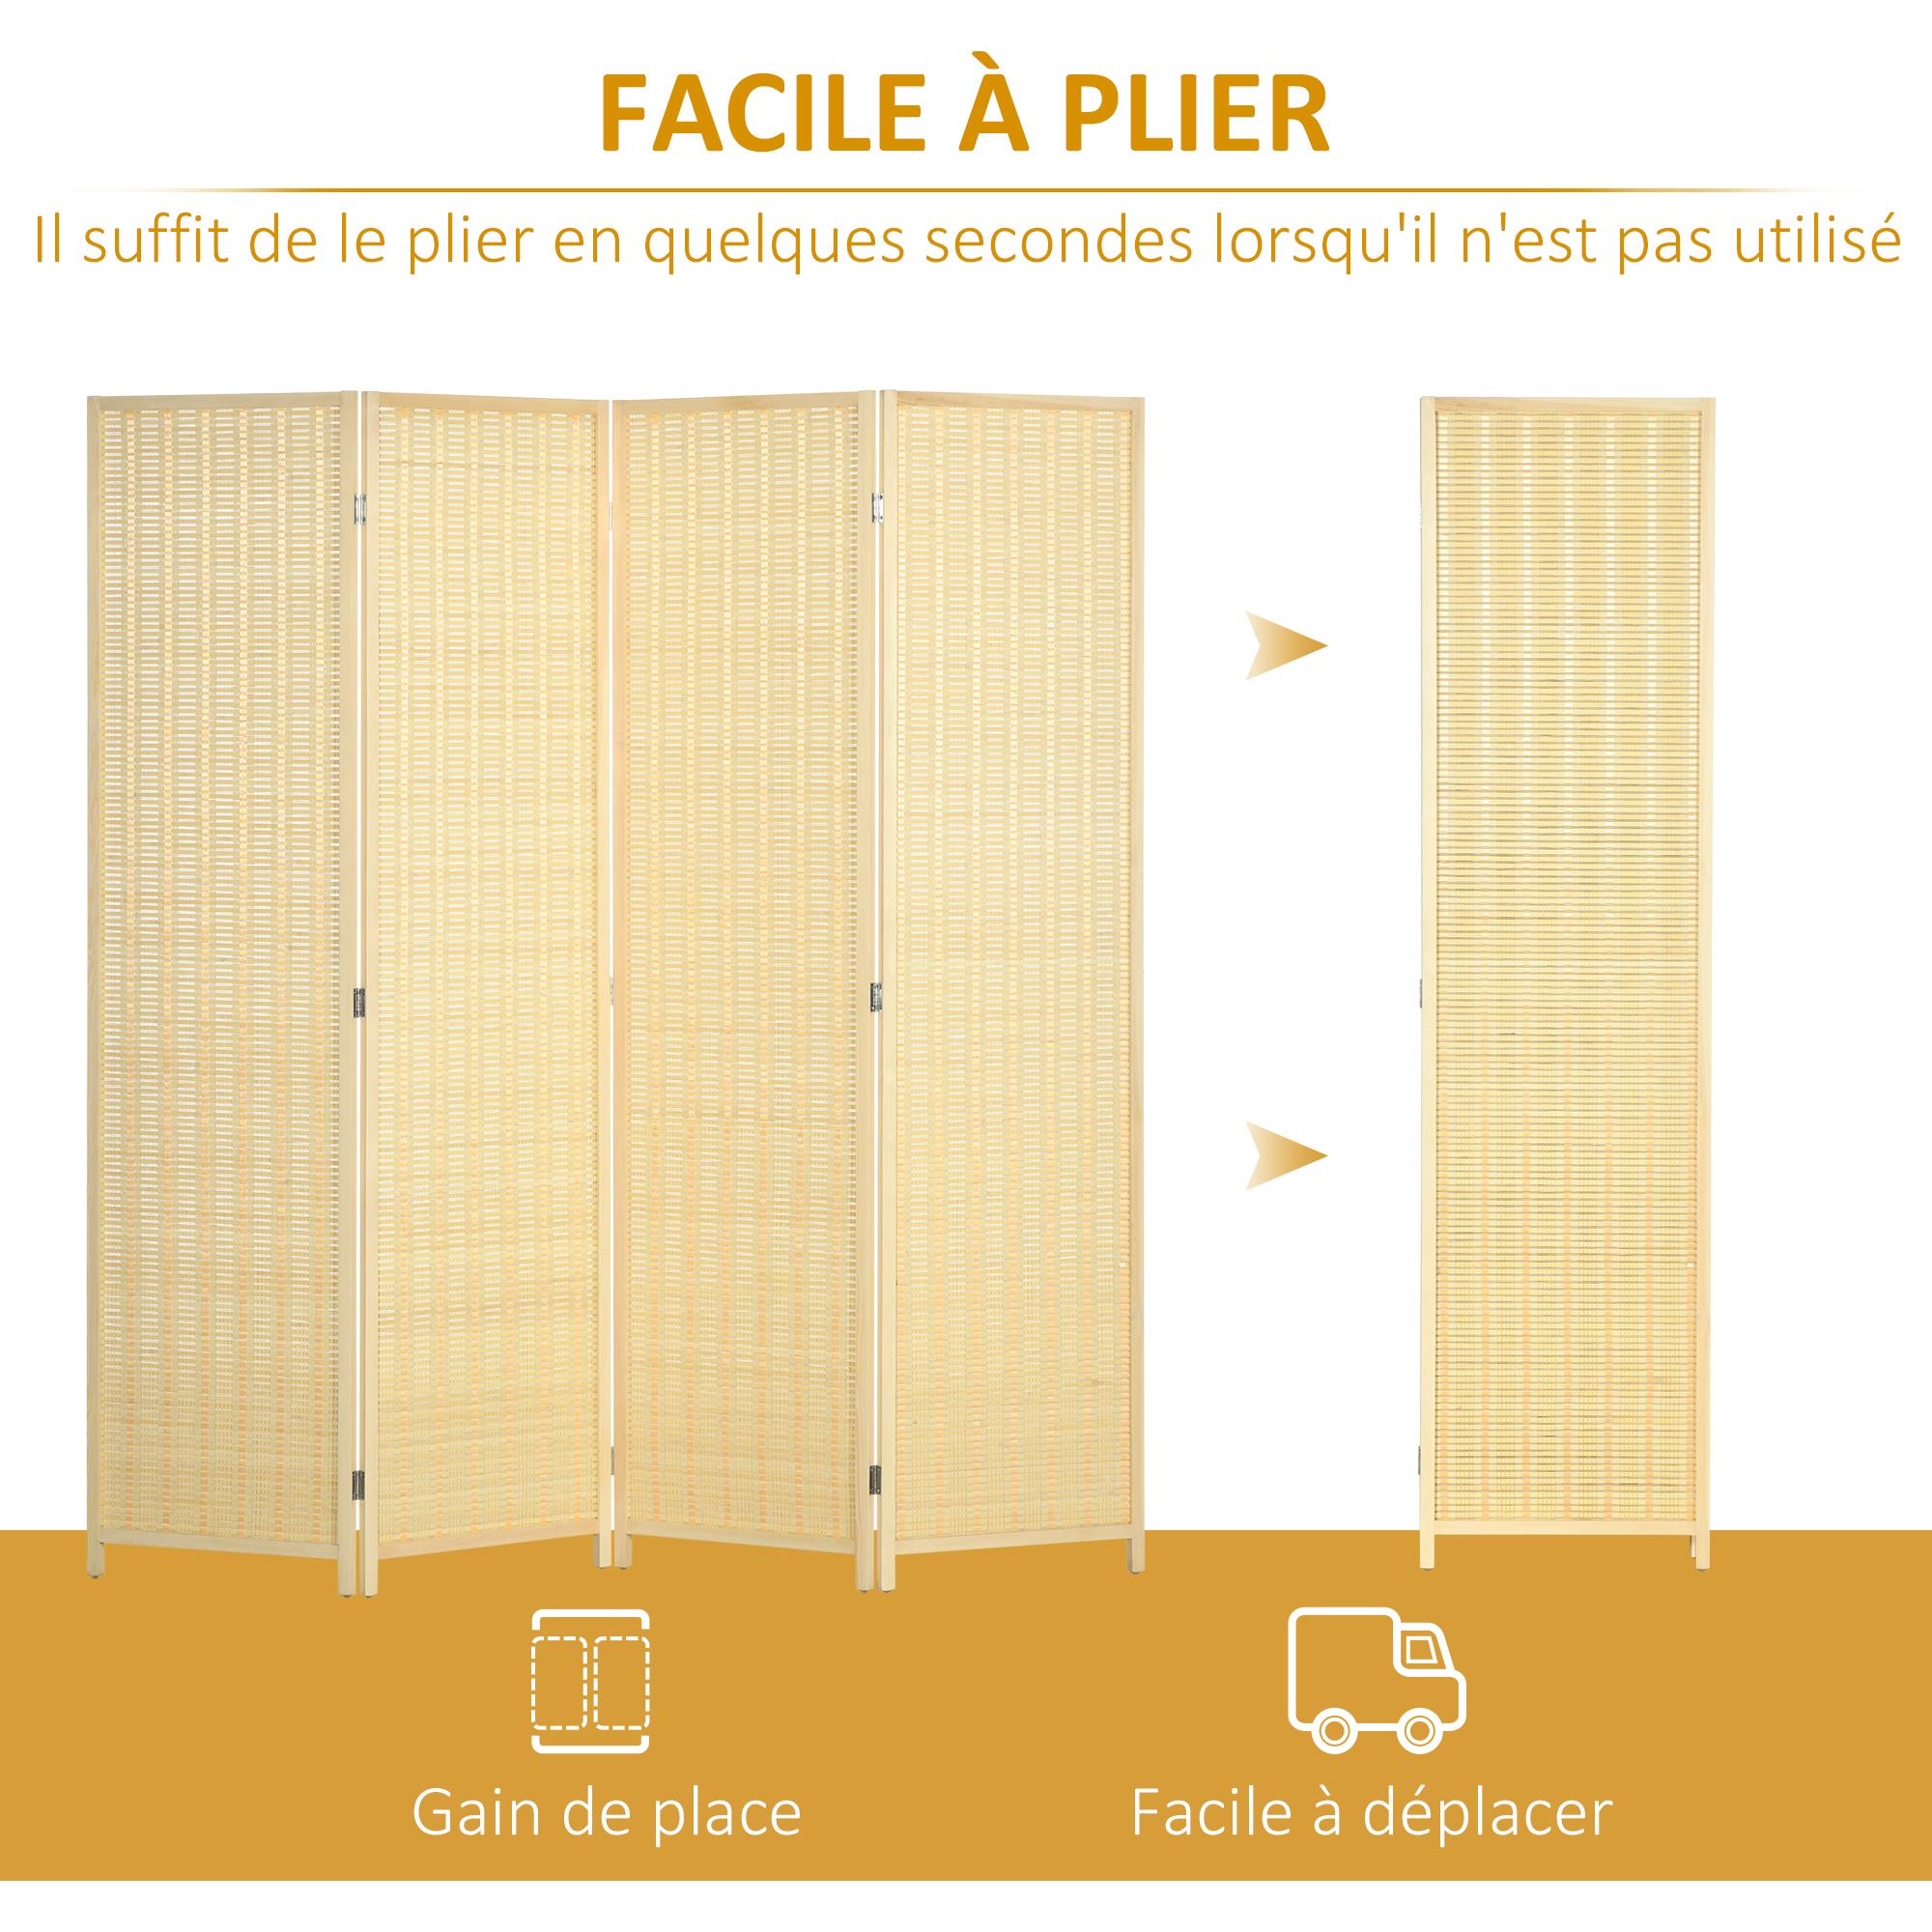 Paravent intérieur séparateur de pièce pliable 4 panneaux dim. 180L x 180H cm bois pin bambou coton